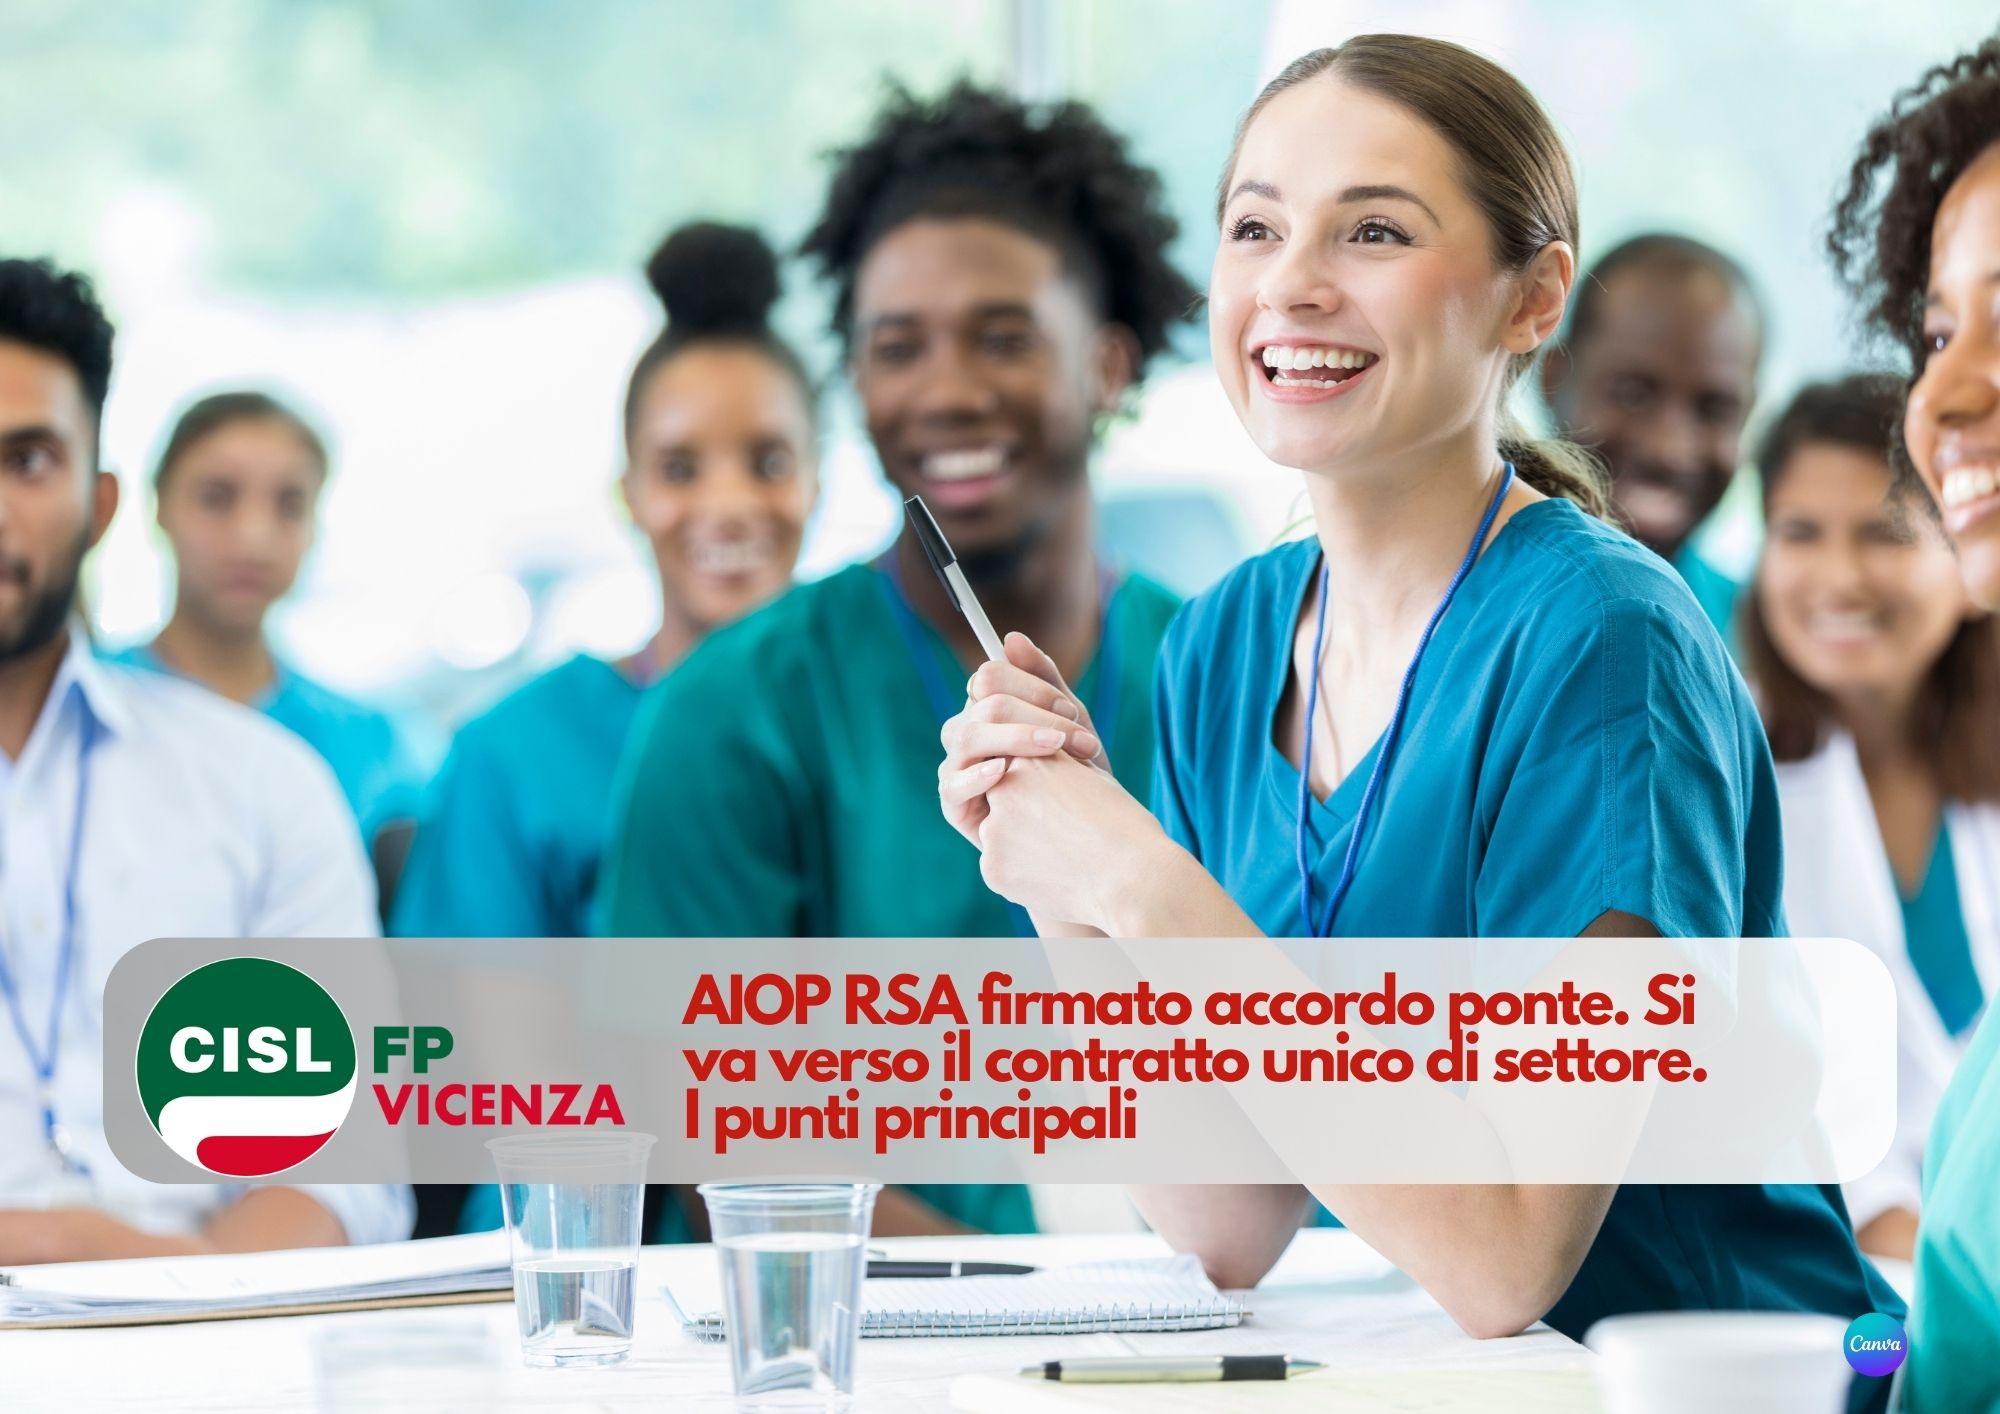 CISL FP Vicenza. AIOP RSA firmato accordo ponte. Si va verso il contratto unico di settore. I punti principali